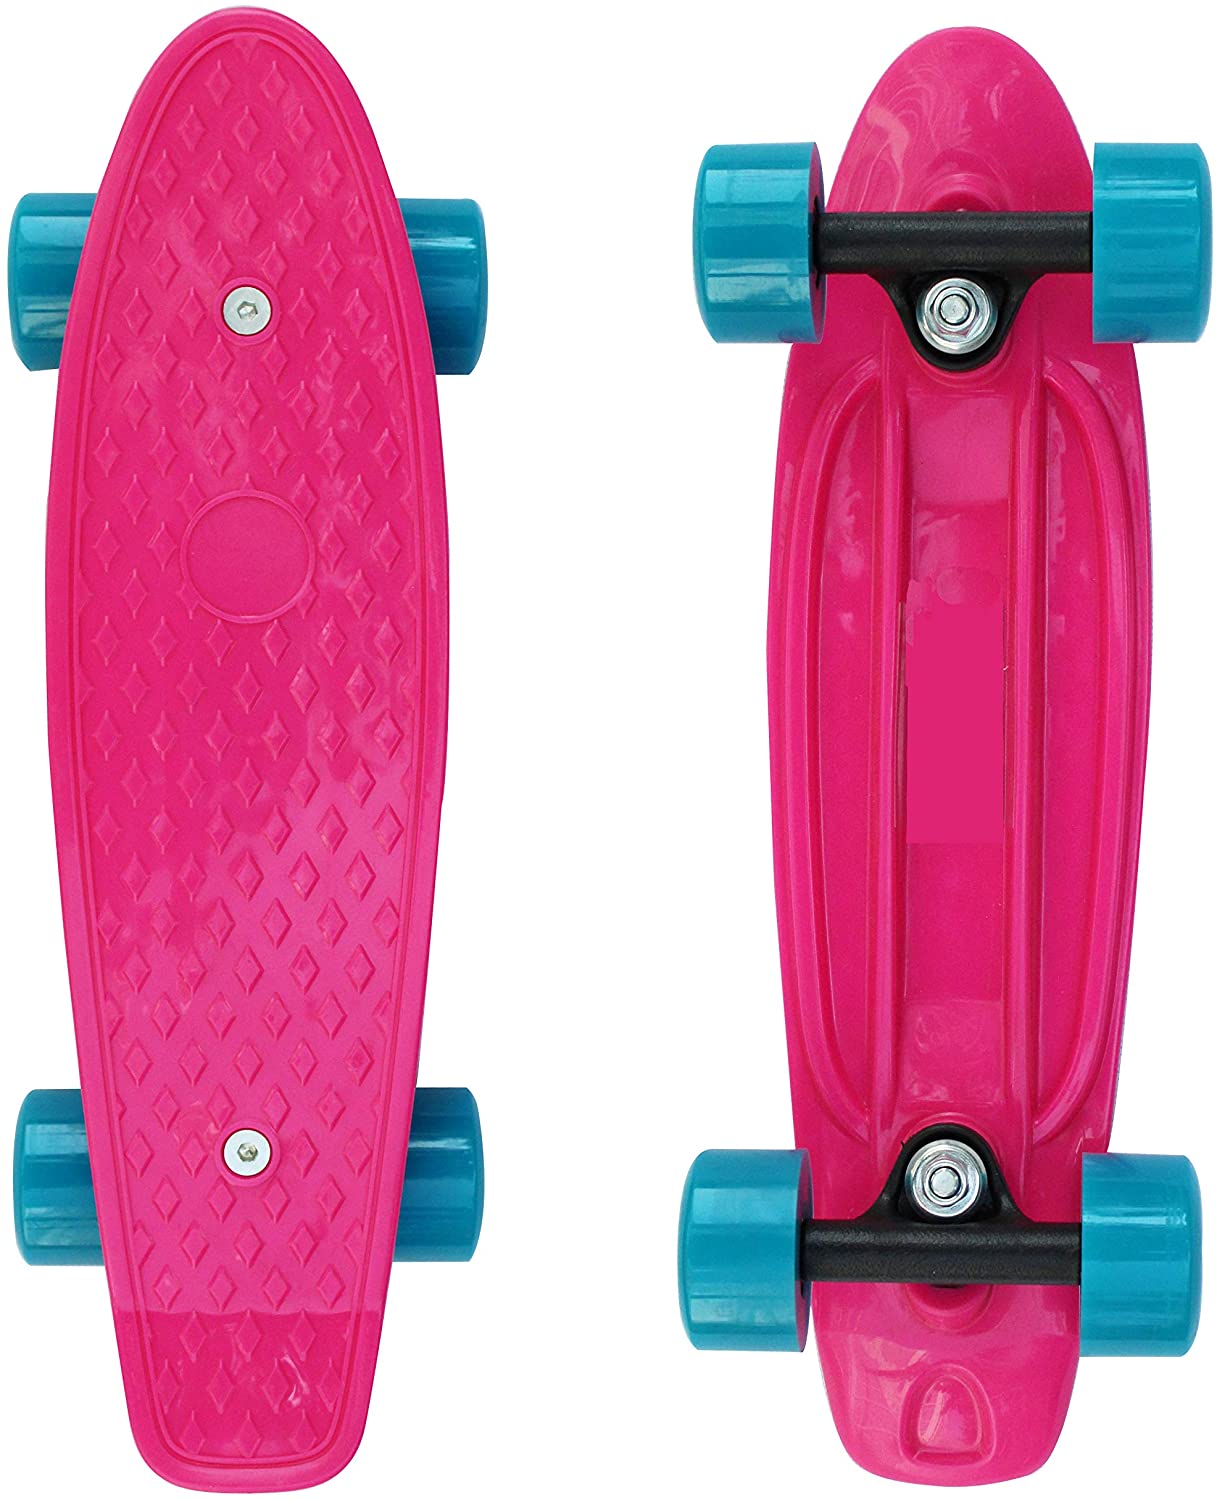 Los niños estupenda mini skateboard Skateboards Funboard completamente boards Board nuevo